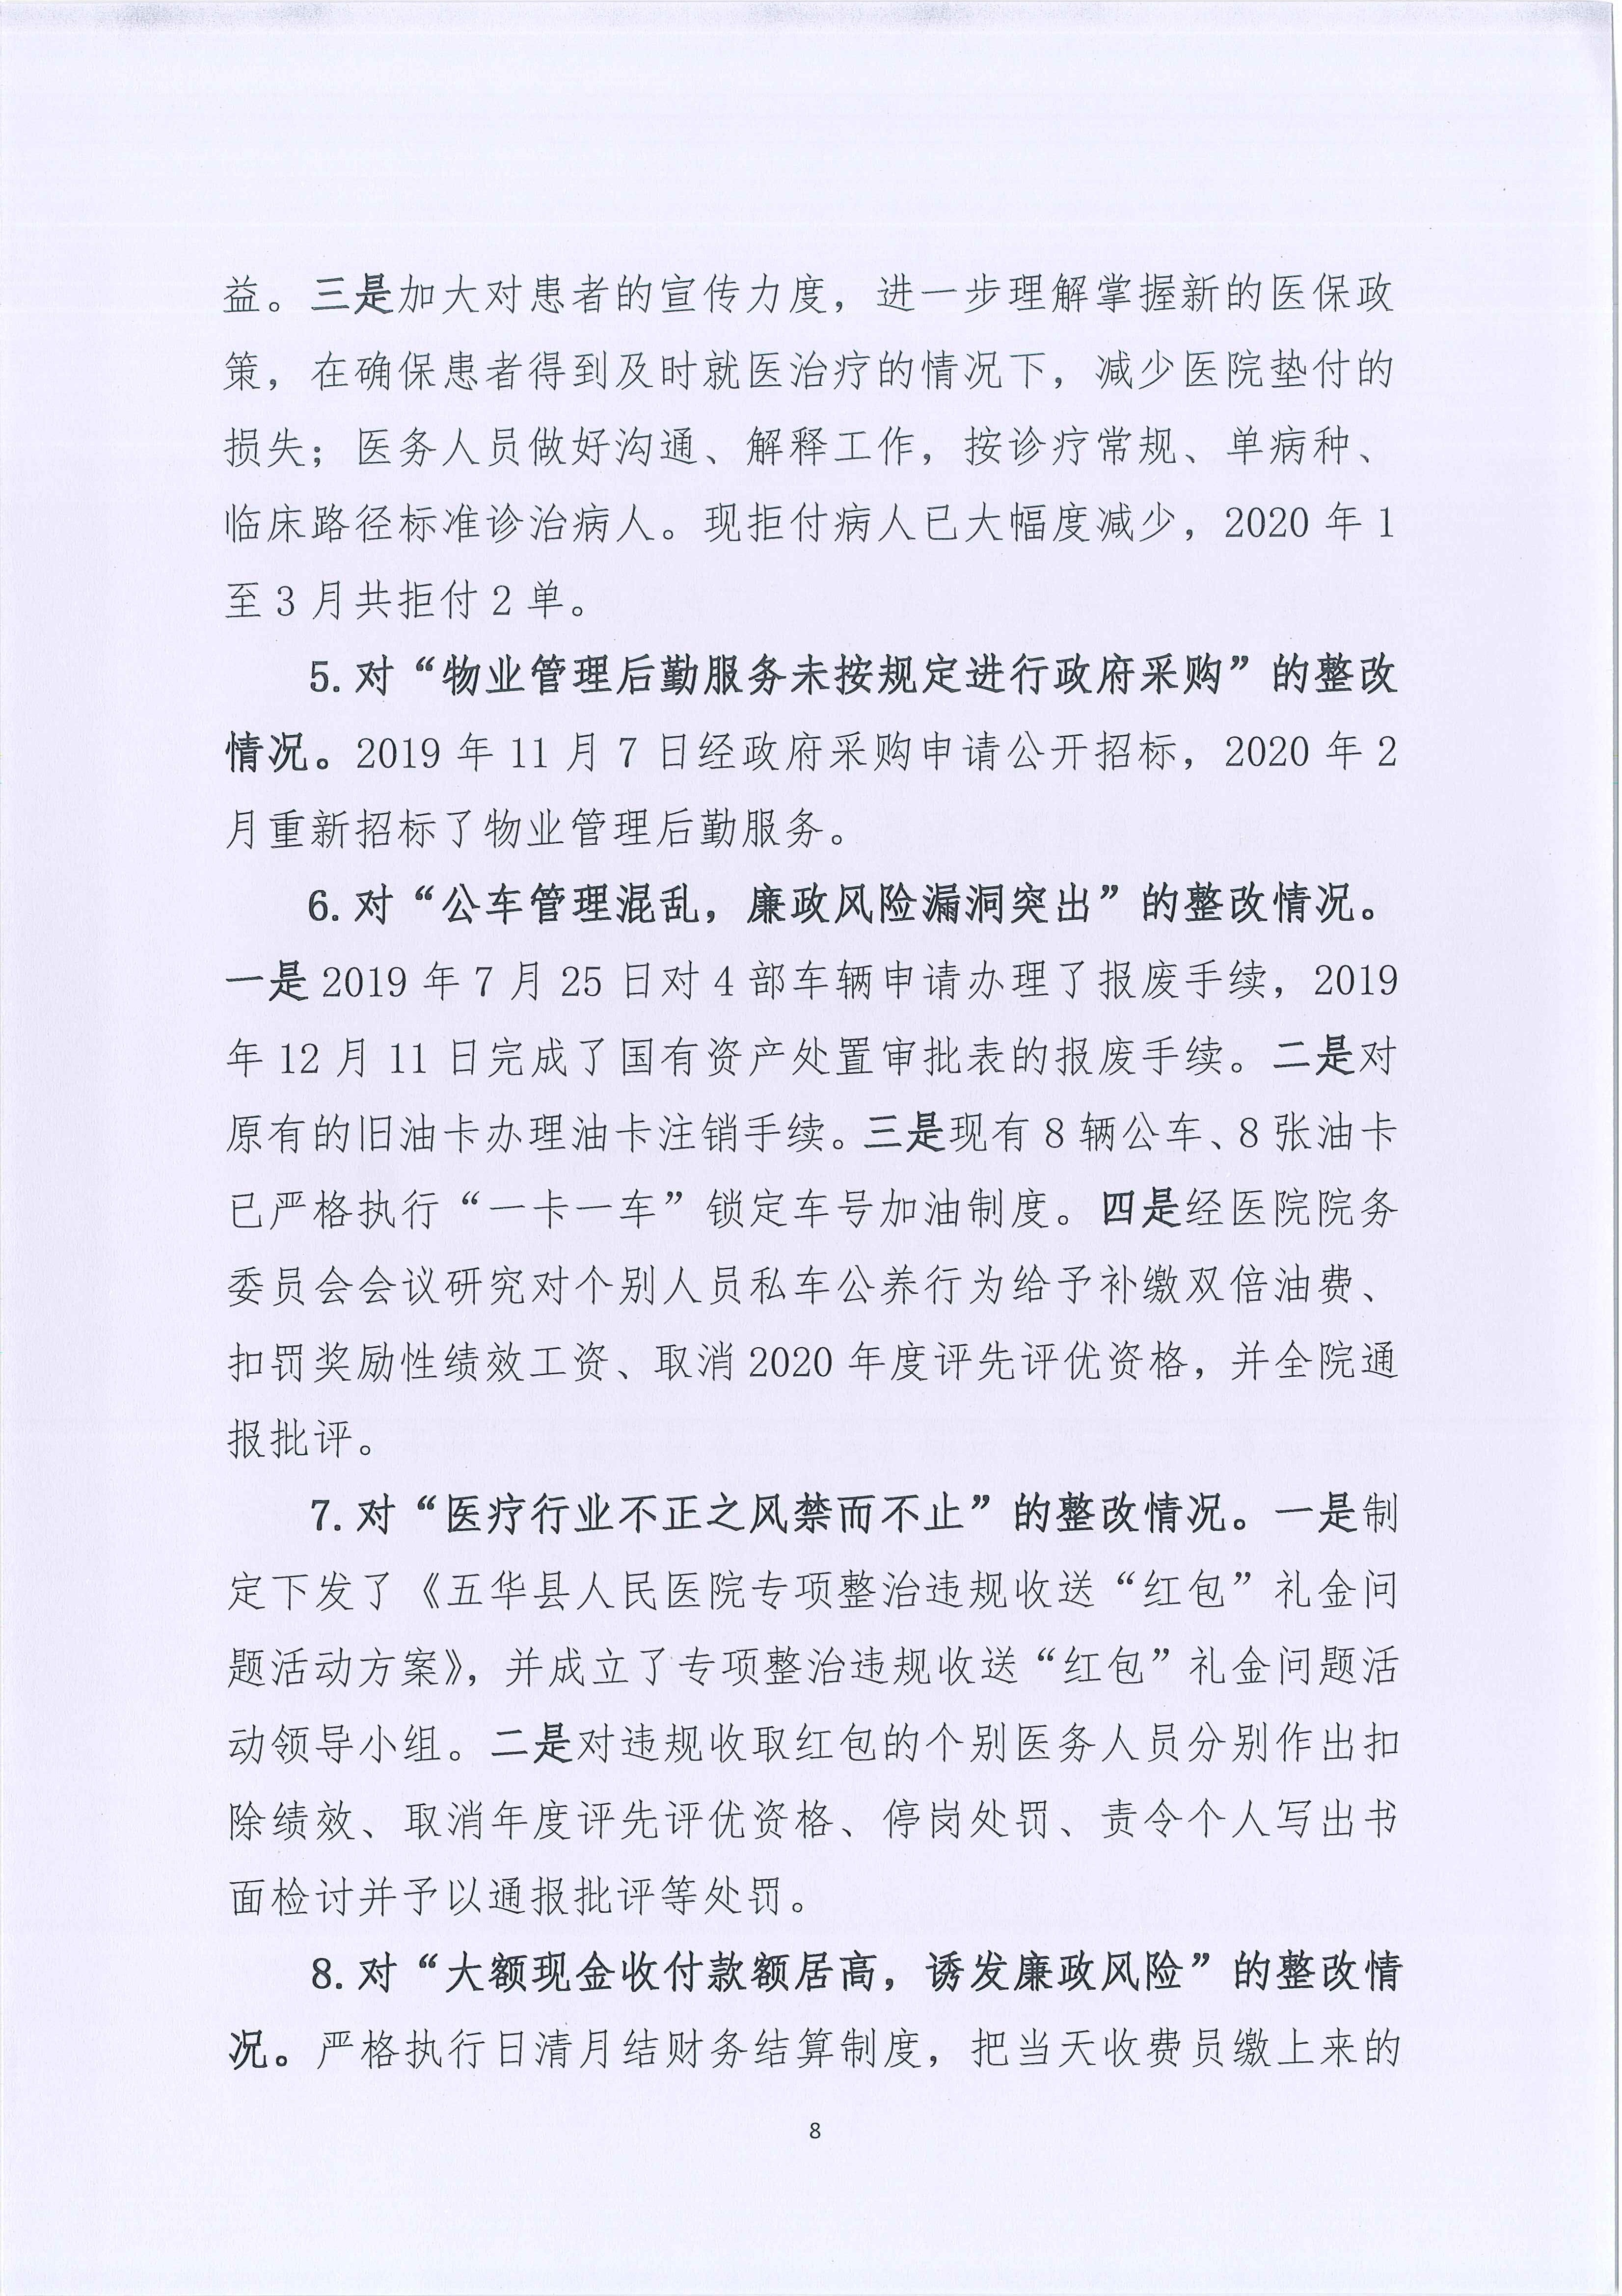 五华县人民医院关于巡察整改进展情况的通报_8